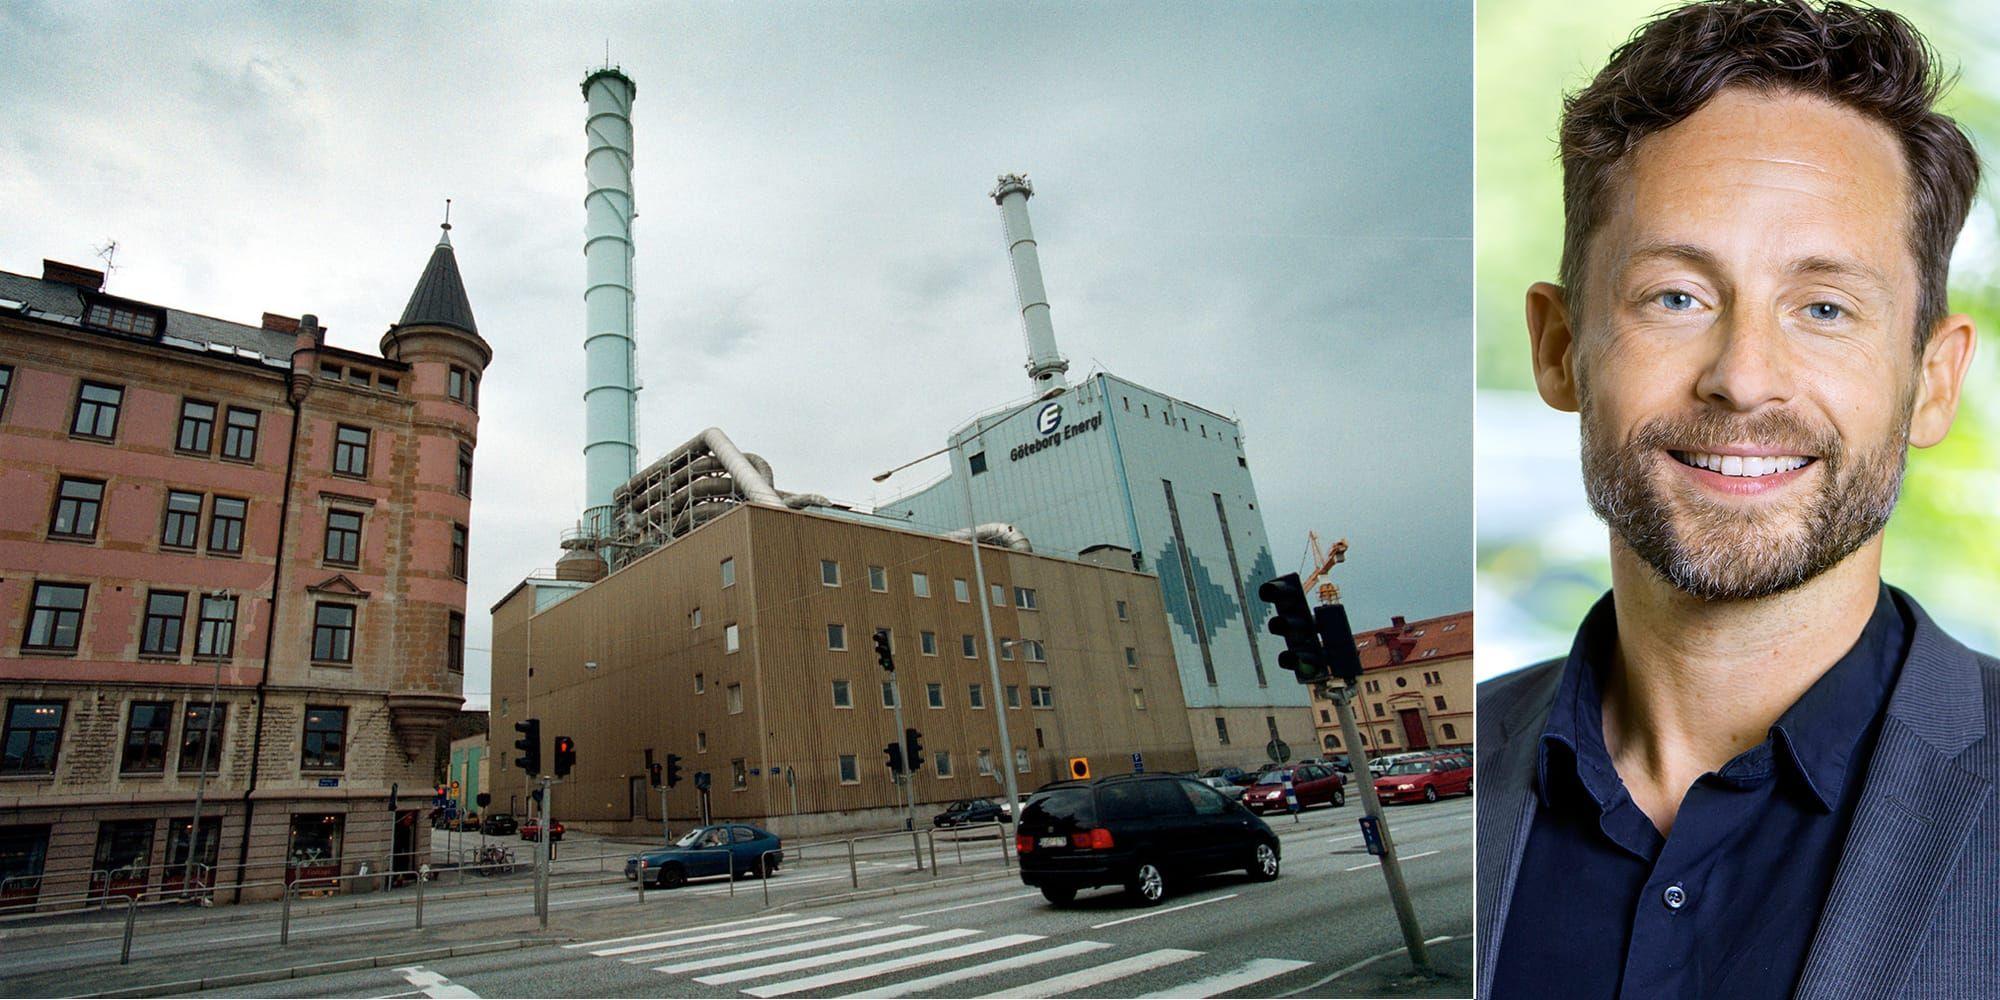 Om inte fjärrvärmen hade funnits hade all denna energi gått förlorad. Göteborg hade i stället behövt köpa in prima energi, motsvarande en dubblering av stadens elanvändning. Detta hade varit väldigt negativt för klimatet, skriver Eric Zinn. 